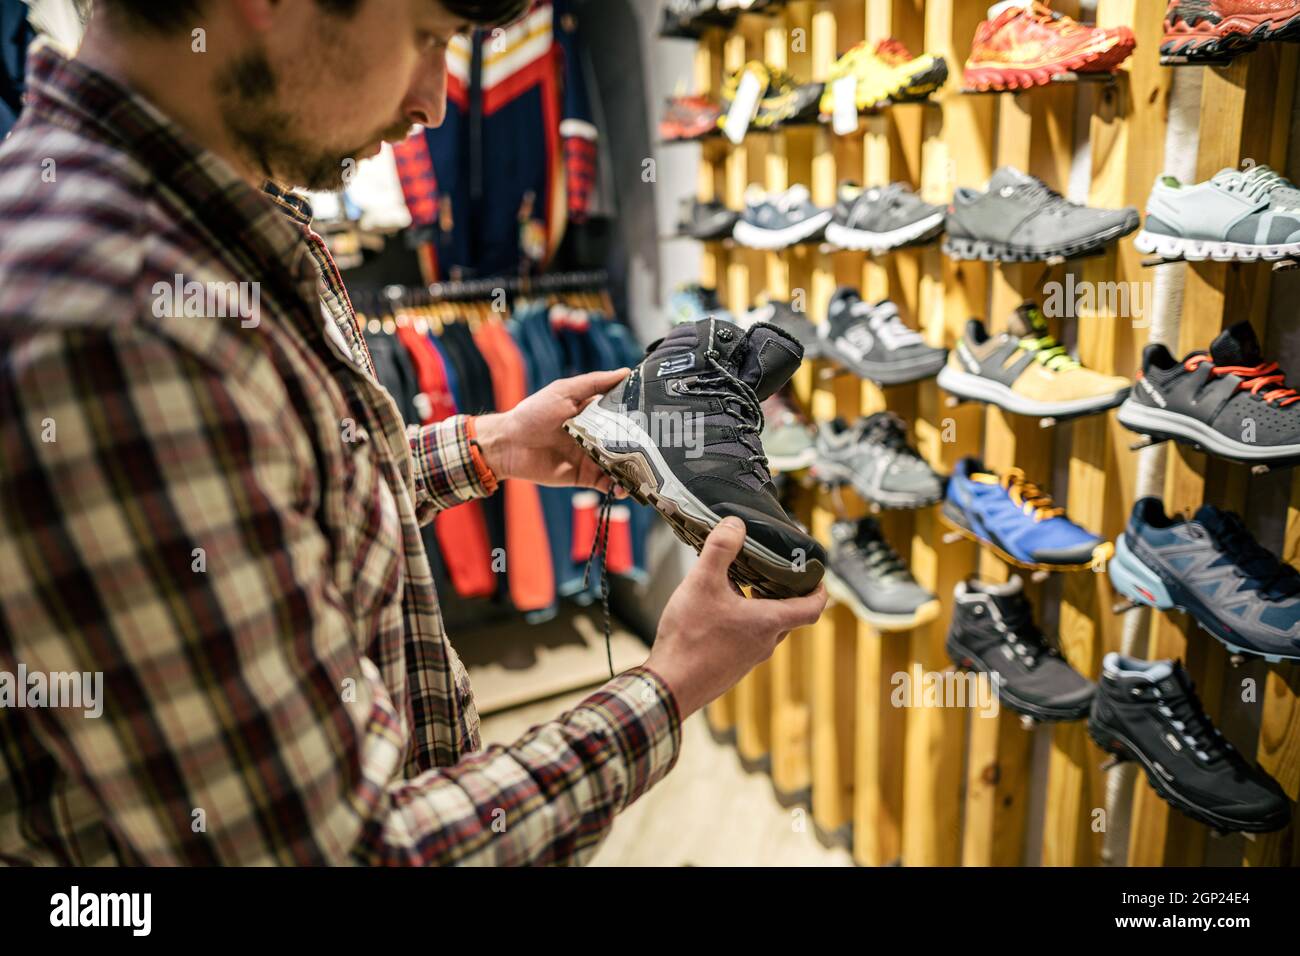 L'homme caucasien choisit et mesure des bottes de randonnée dans un magasin de sport et de voyage. Homme regardant des chaussures de randonnée dans une boutique en plein air. Chaussures de randonnée pour hommes Banque D'Images